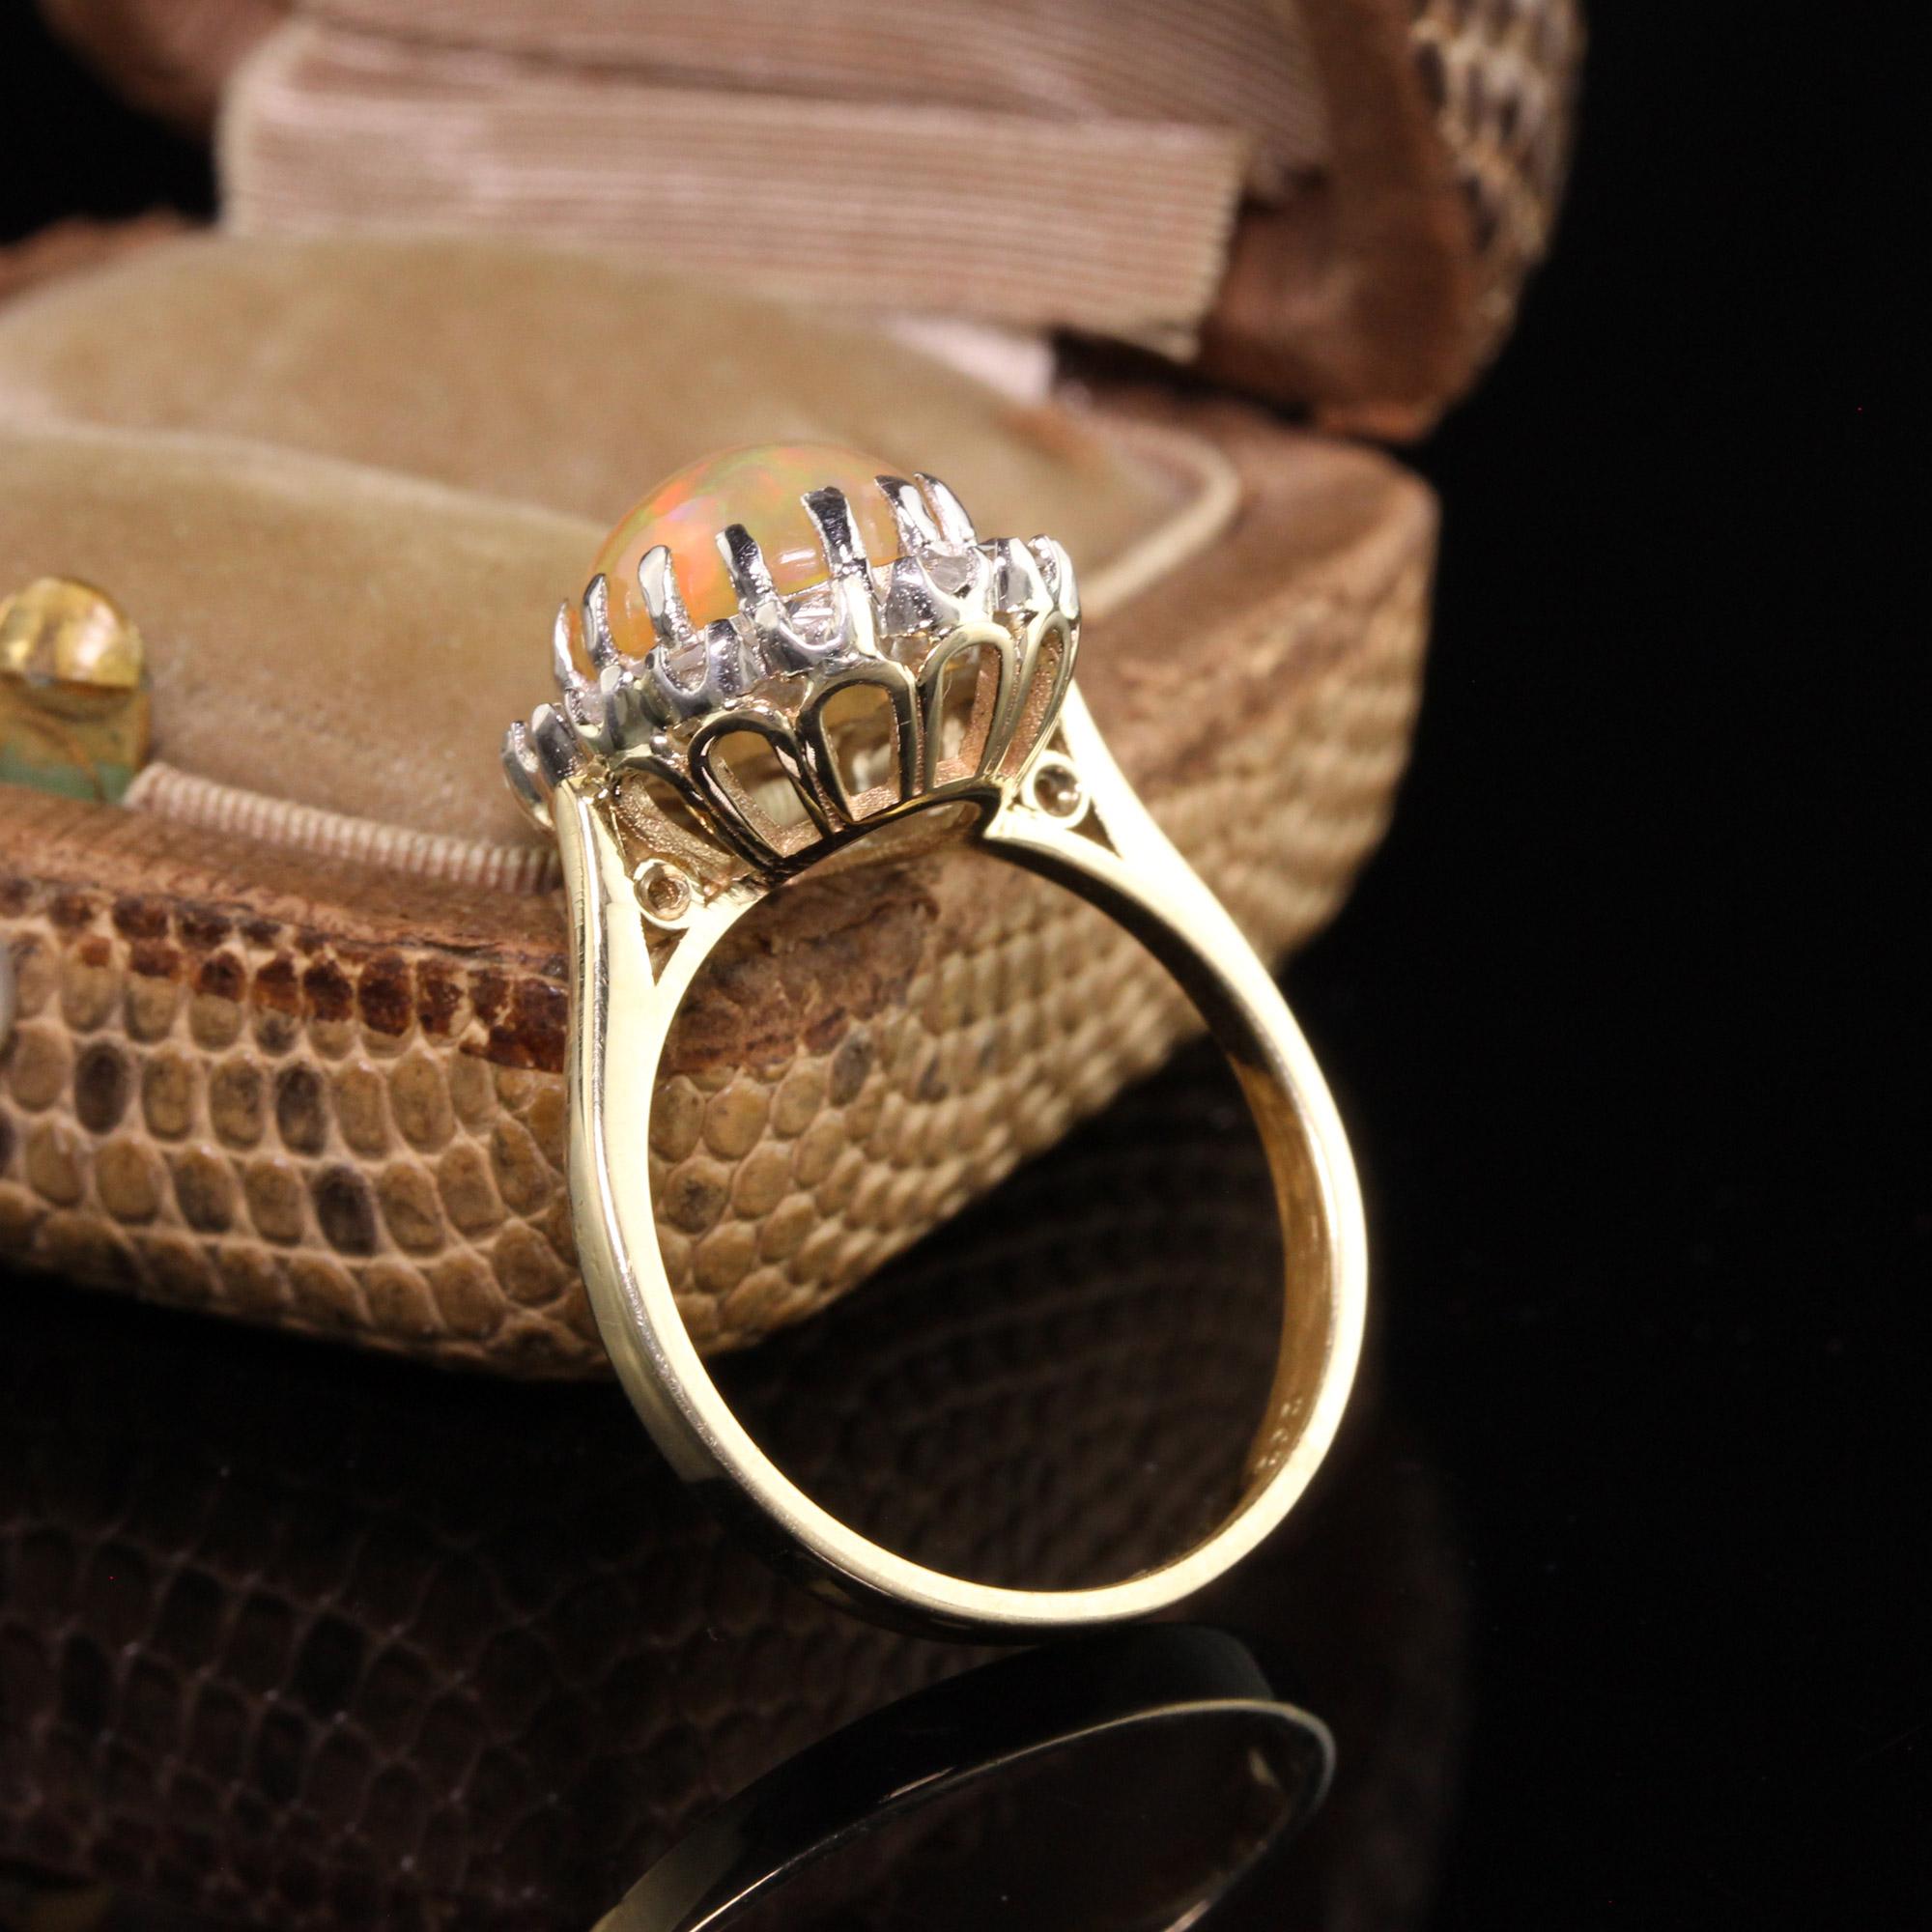 Schöne Vintage Estate 14K Gelbgold Opal und Rose Cut Diamond Engagement Ring. Dieser wunderschöne Ring zeigt einen leuchtenden Opal in der Mitte einer viktorianischen Revival-Fassung mit Rosenschliff als Halo.

Artikel #R0944

Metall: 14K